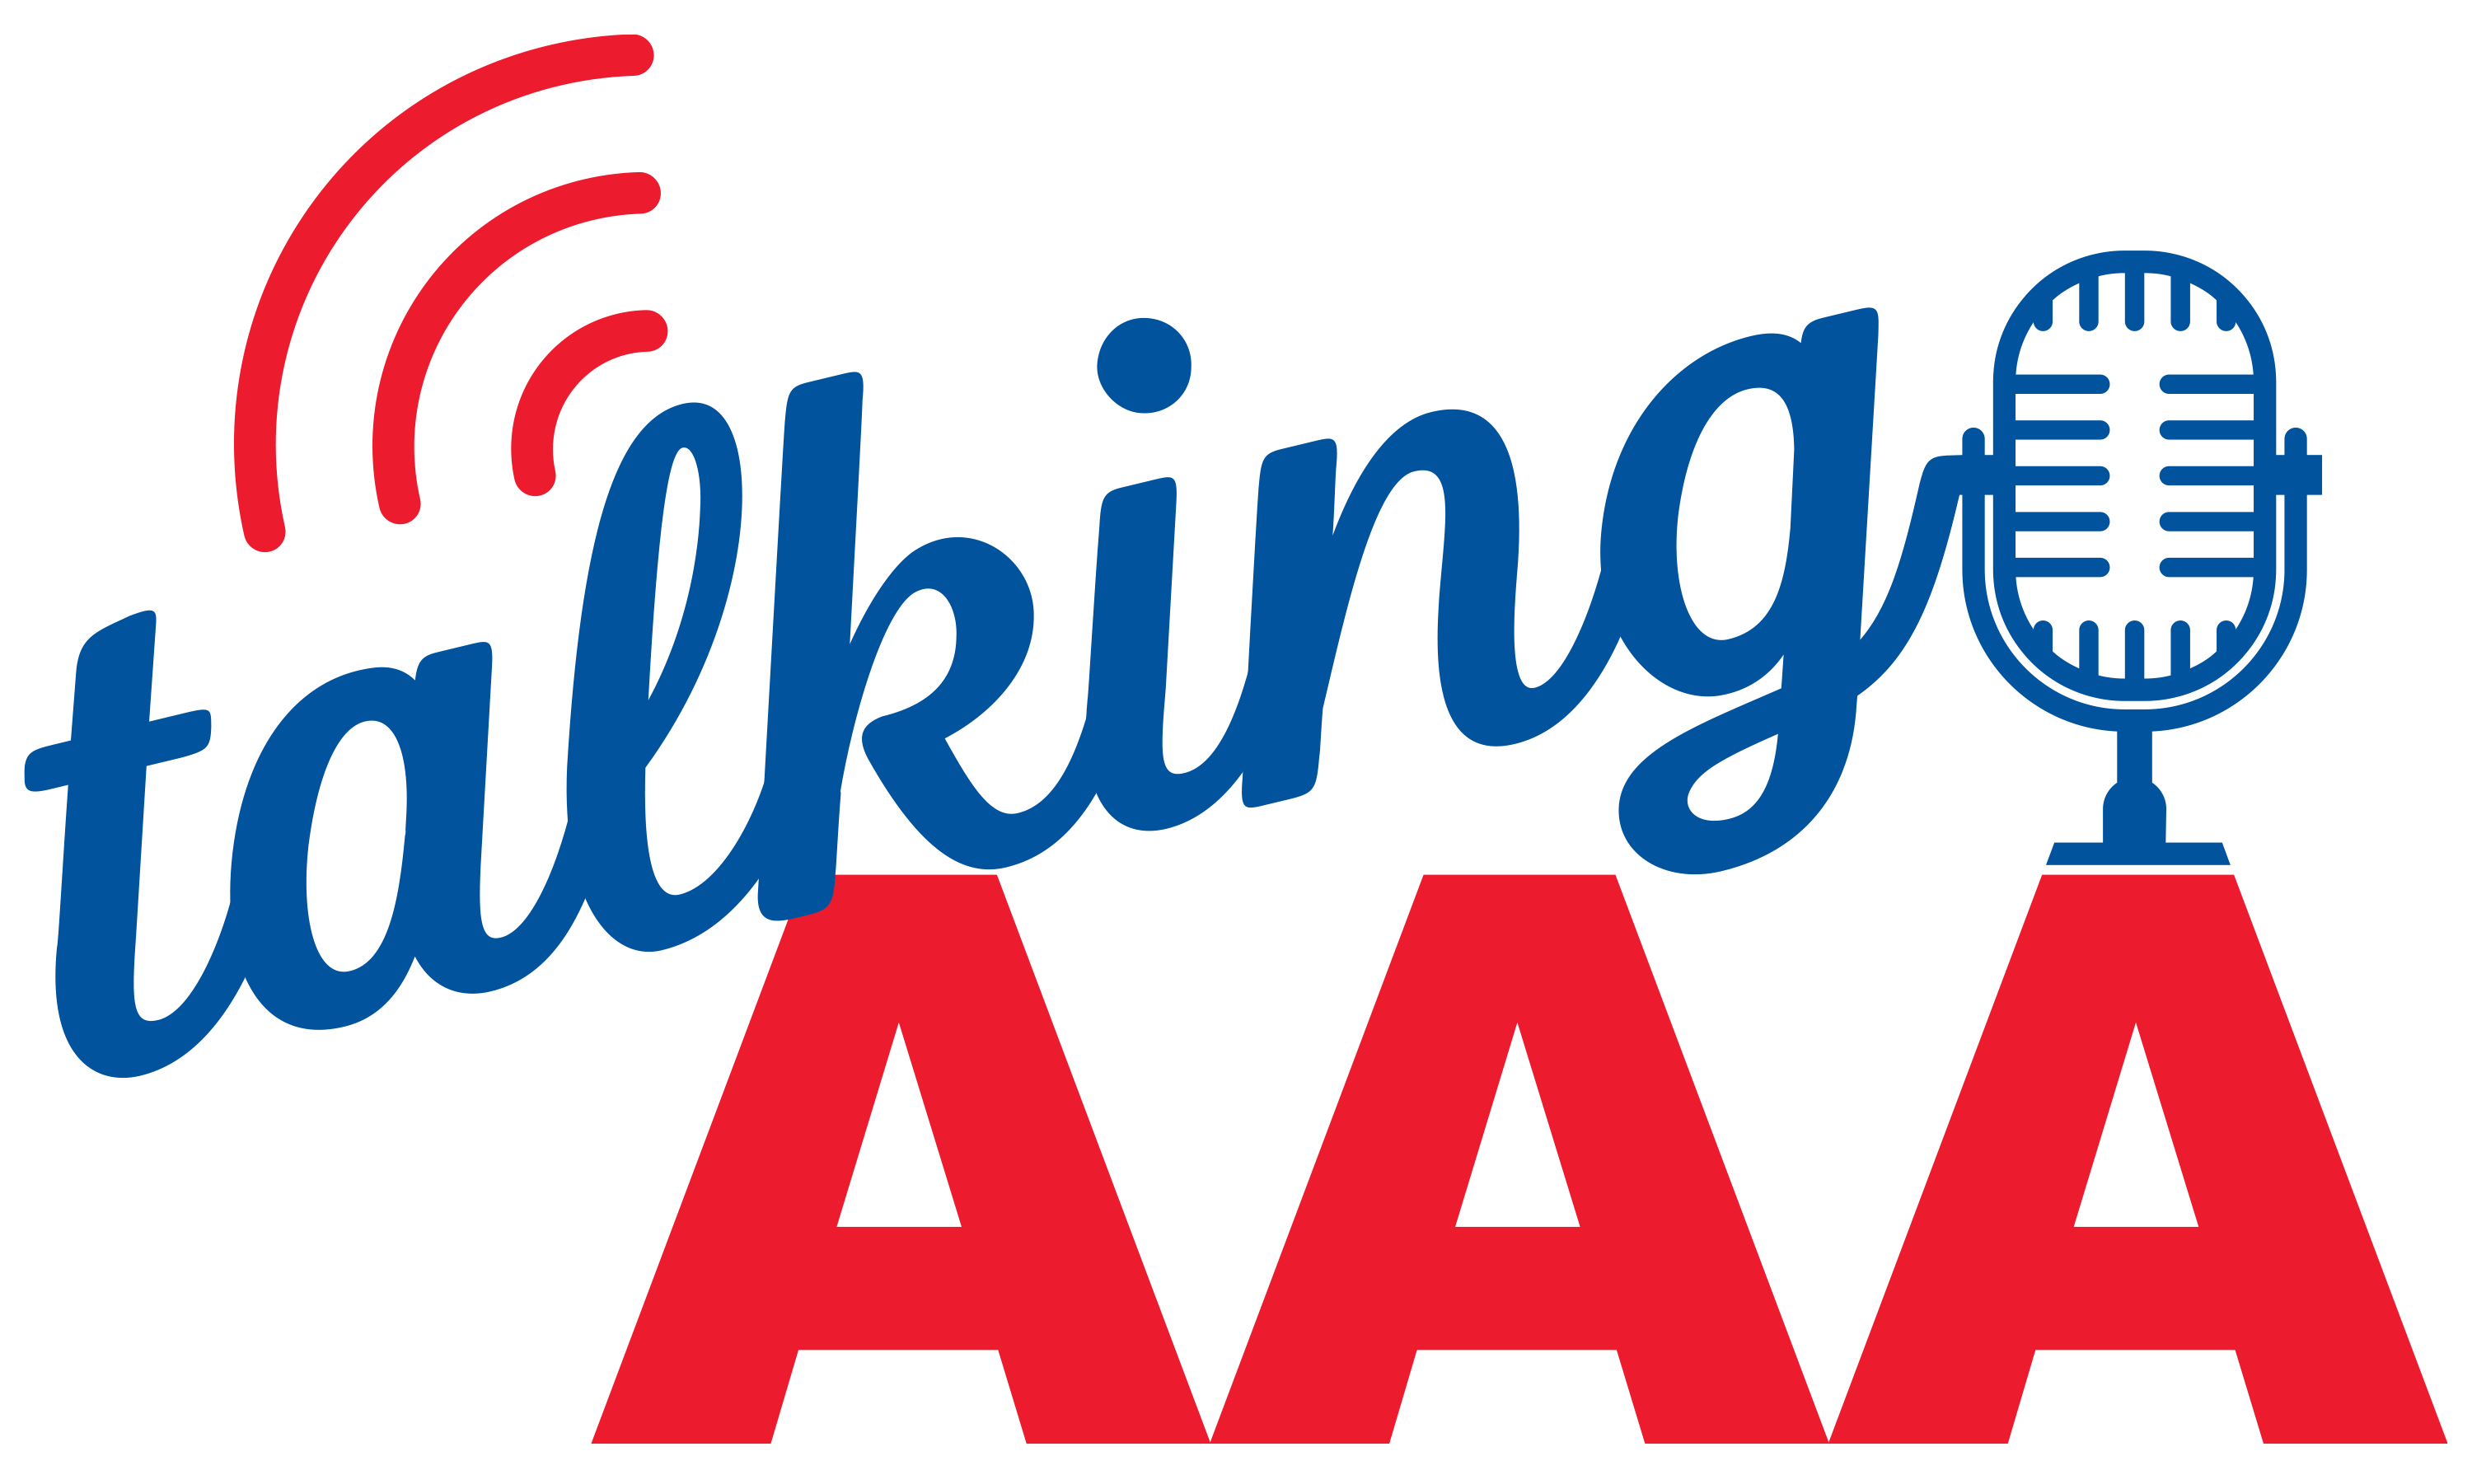 Talking AAA